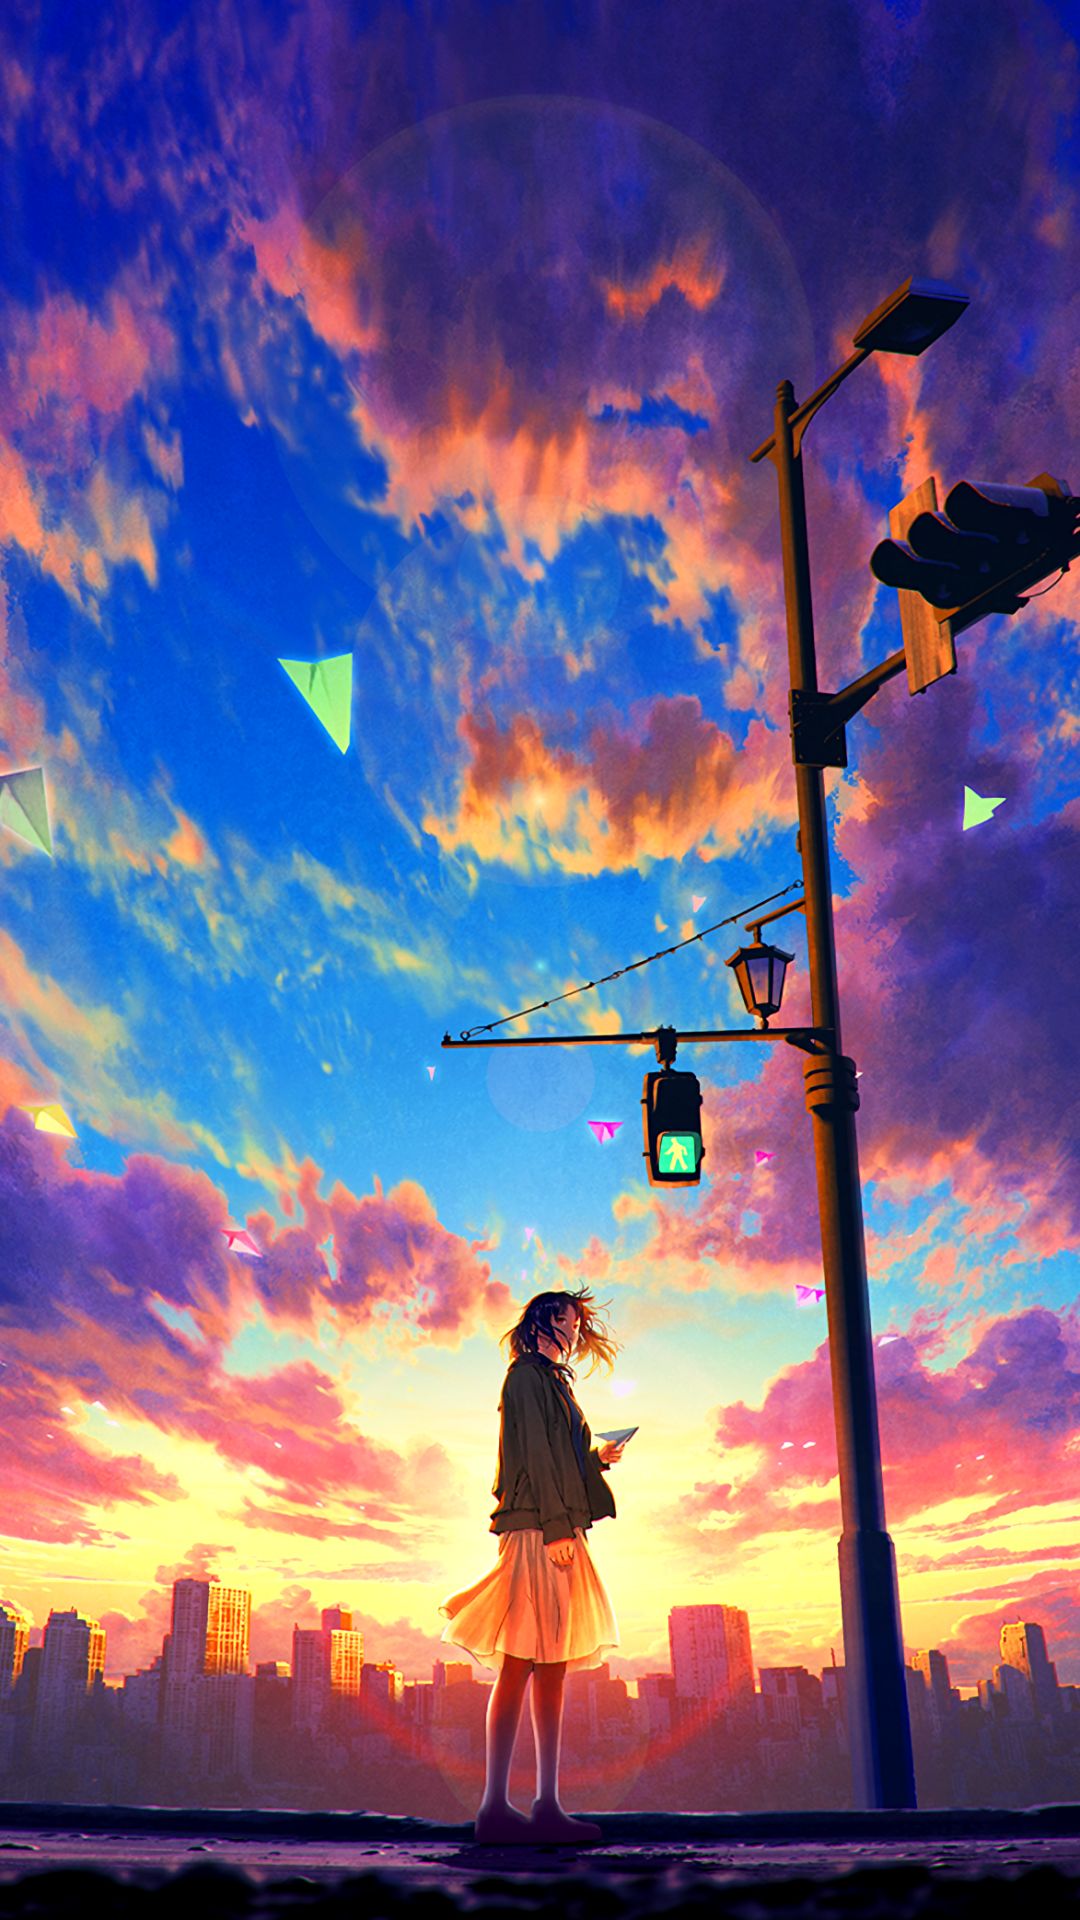 anime, original, city, traffic light, paper plane, sky, dawn